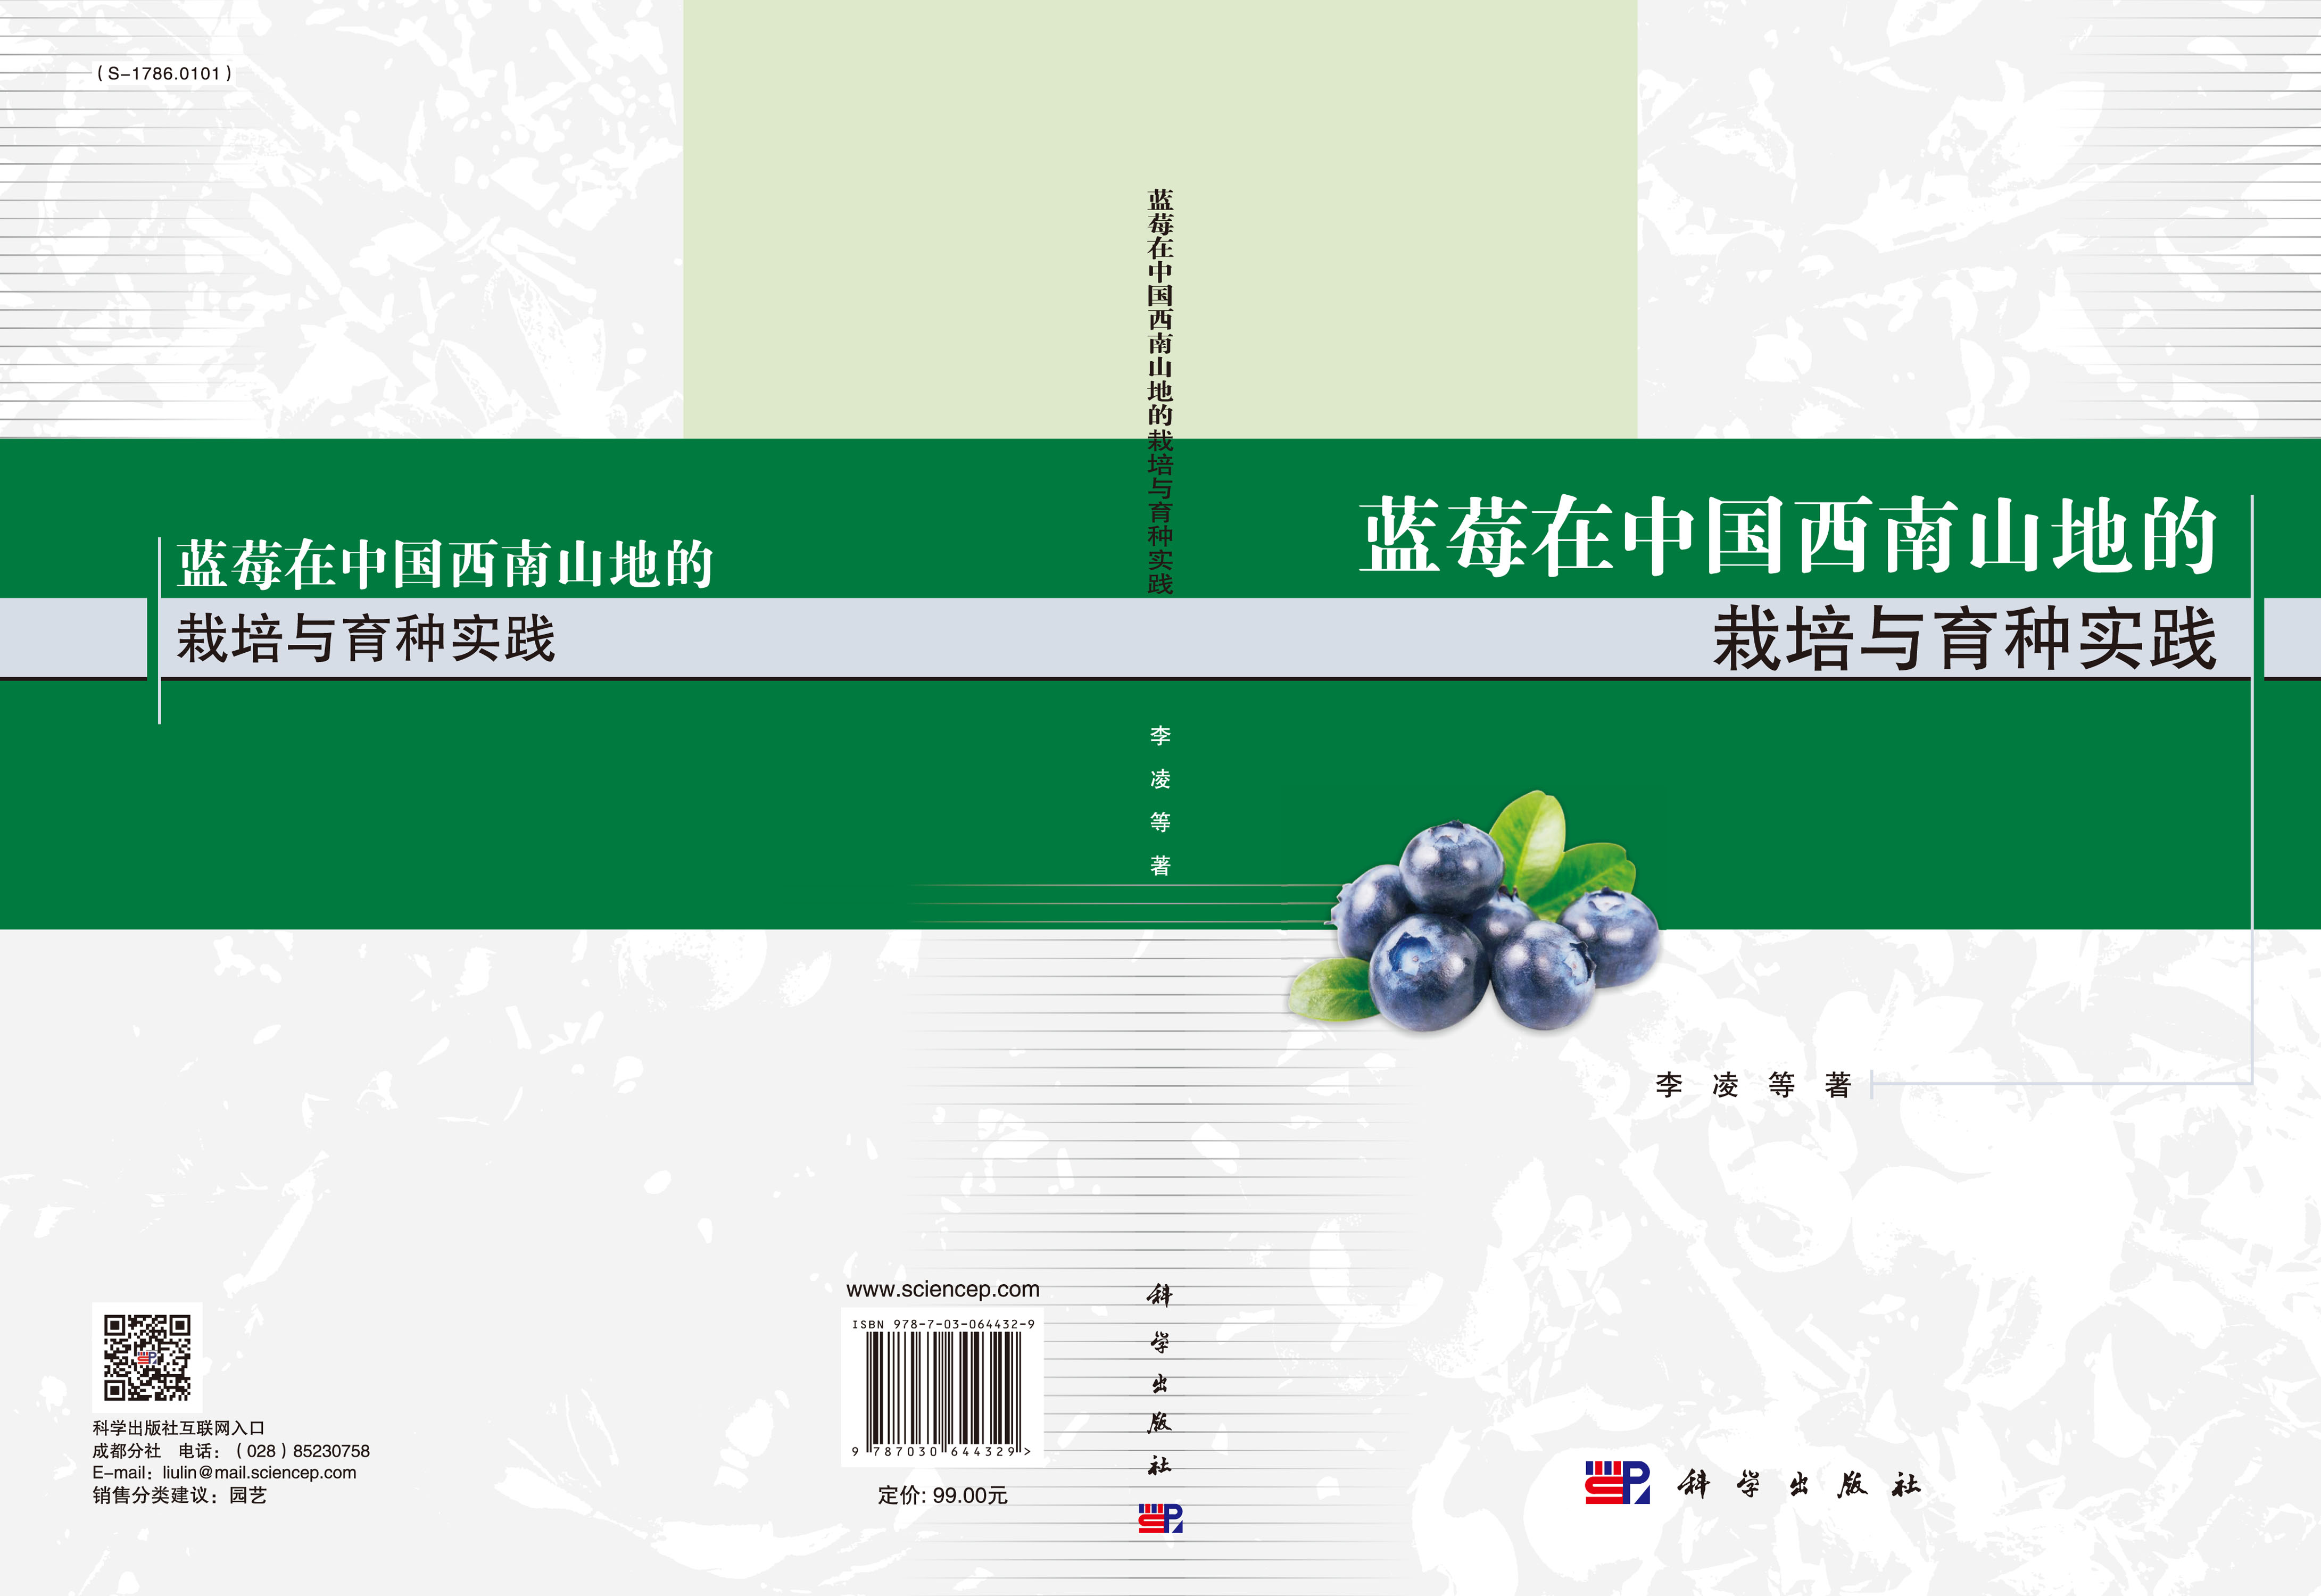 蓝莓在中国西南山地的栽培与育种实践